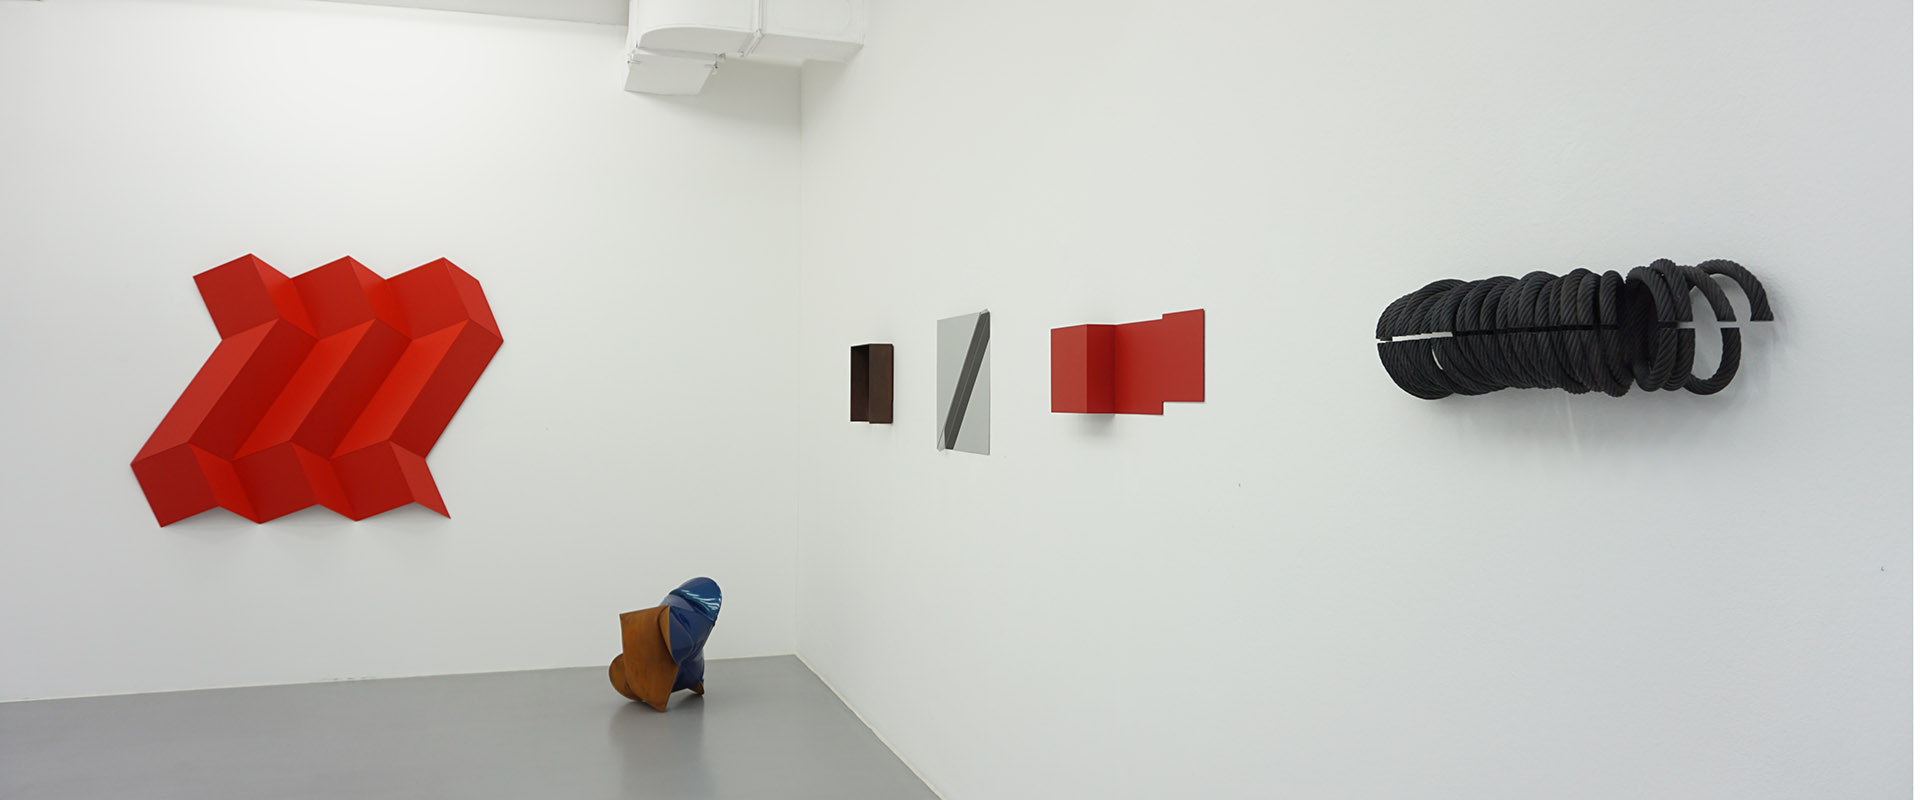 Ausstellungsansicht "Ecken und Kanten", Galerie Renate Bender 2018